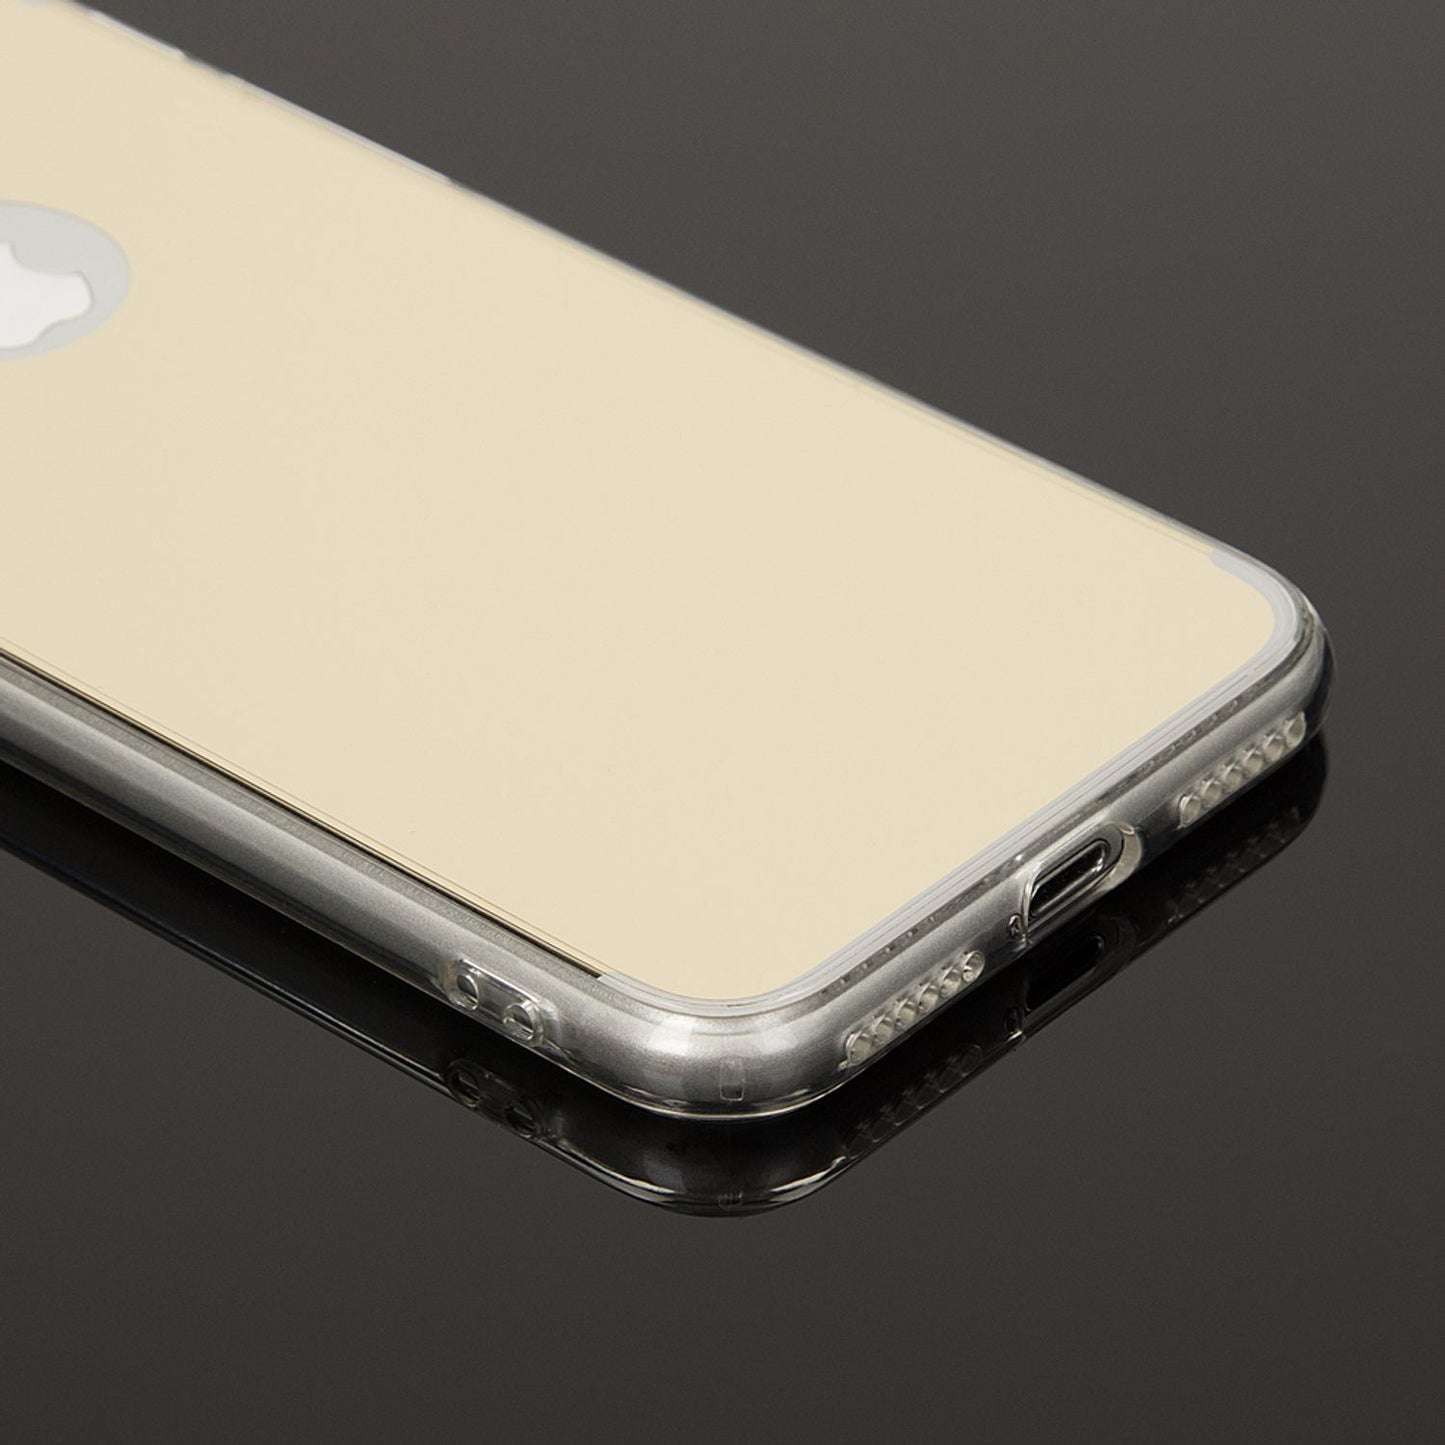 NALIA Handy Hülle für Apple iPhone 7, Spiegel Silikon Case Cover Schutz Bumper